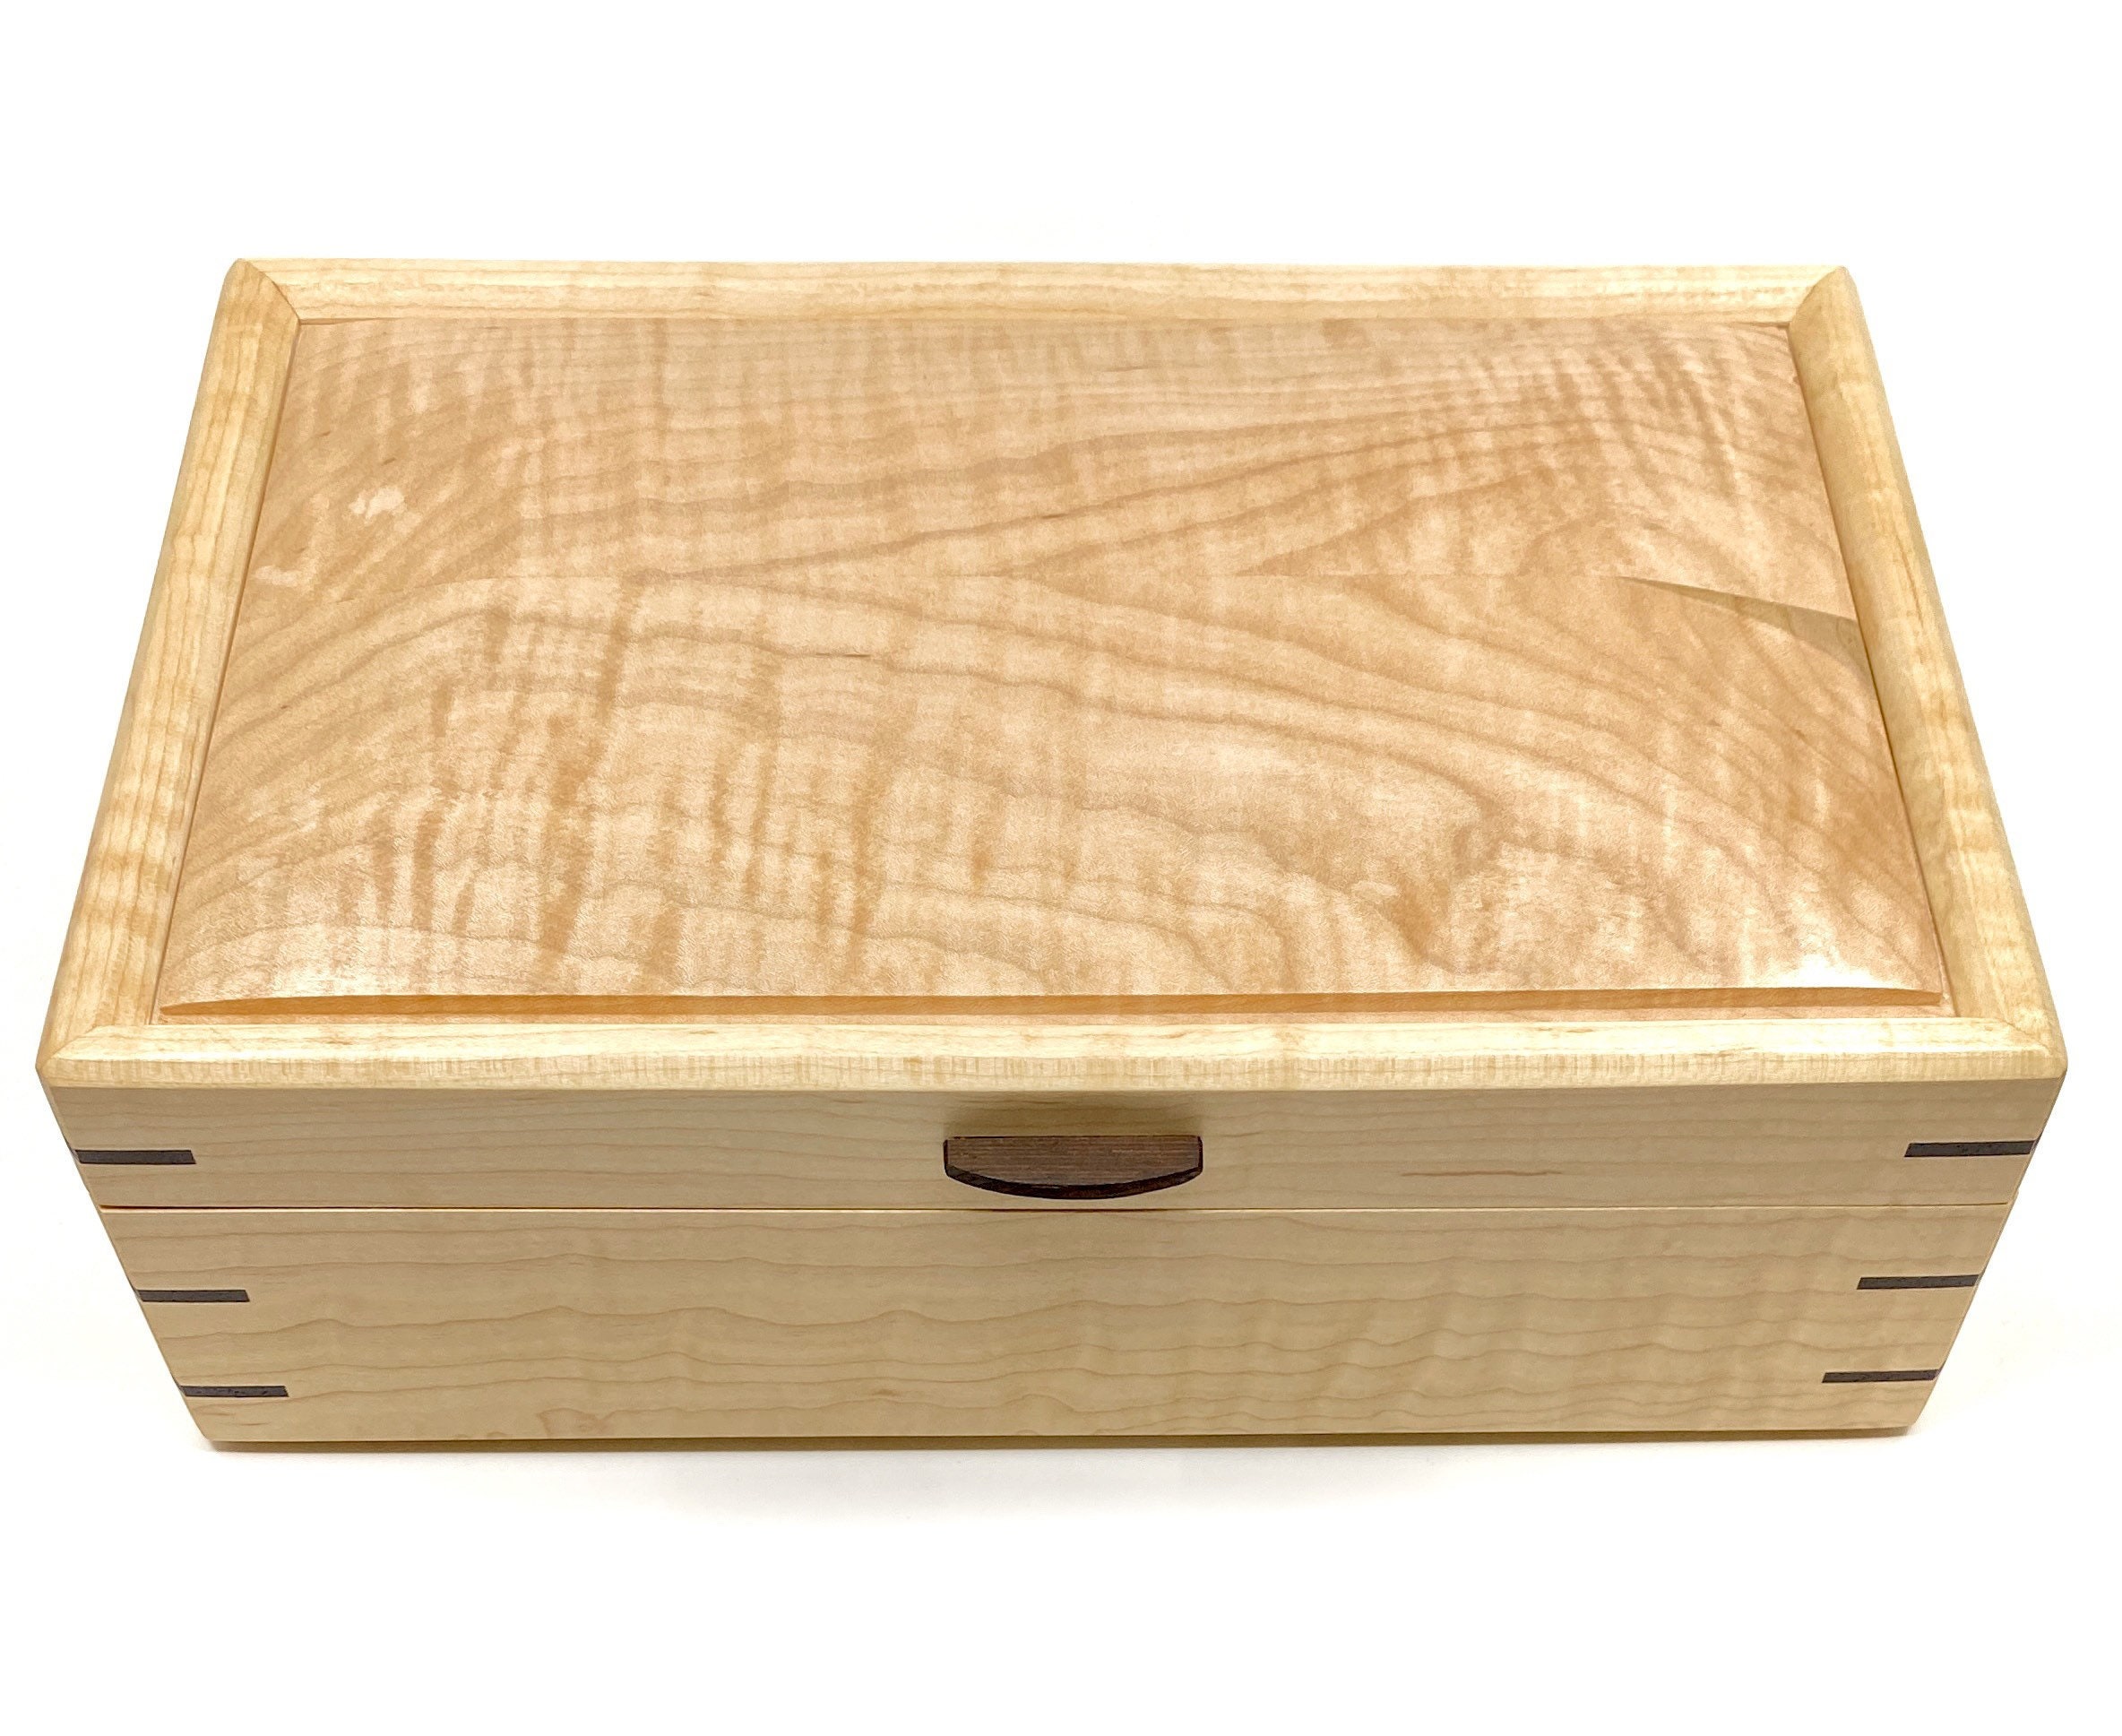 Keepsake Box Gift for Her Wooden Jewelry Box Jewelry Organizer Jewelry Storage Box